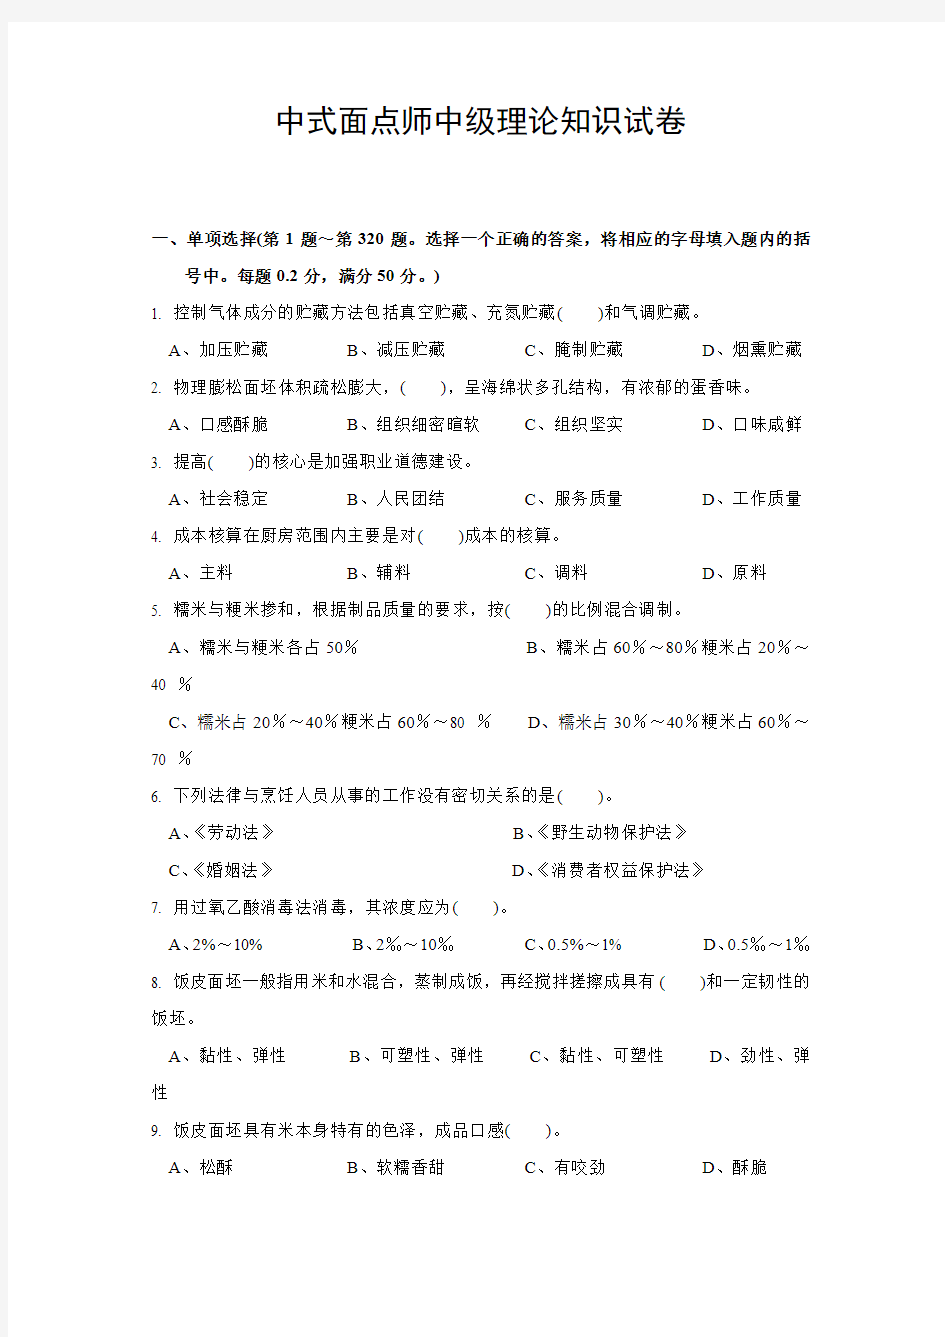 中式面点师中级理论知识试卷500题(包含答案)